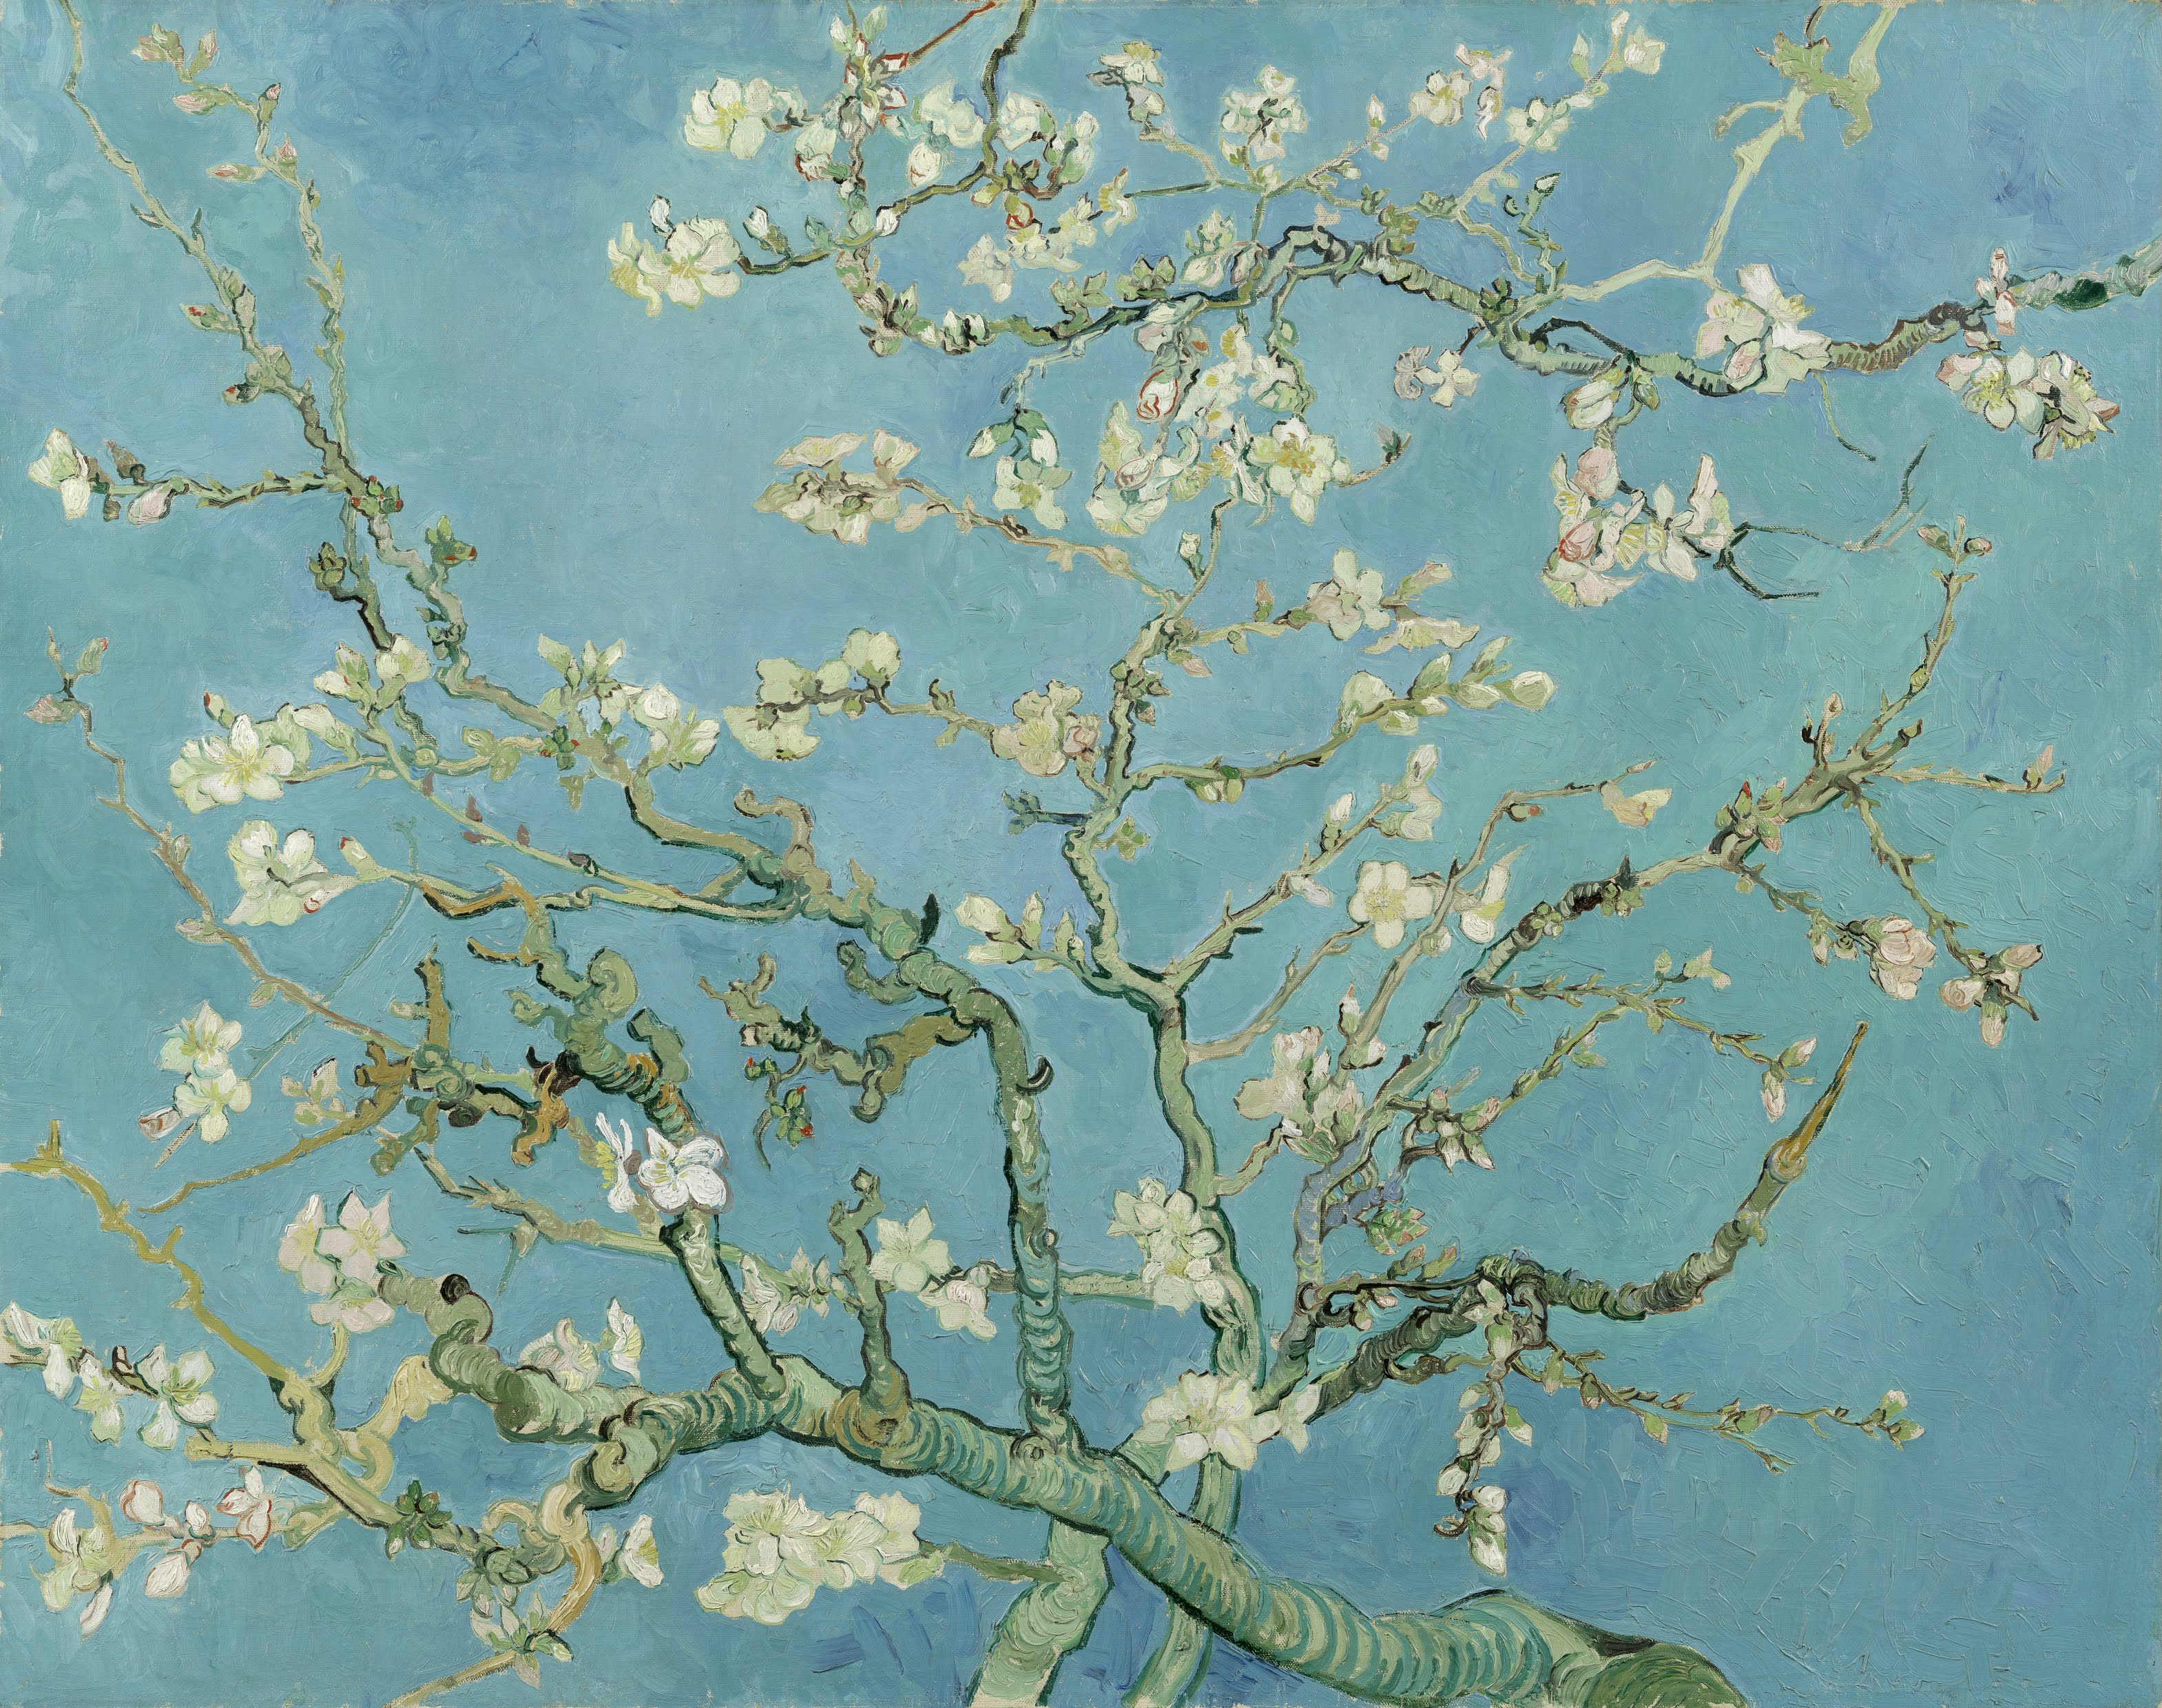 أزهار اللوز by فينسنت فان جوخ - 1890م - 74 x 92 cm 